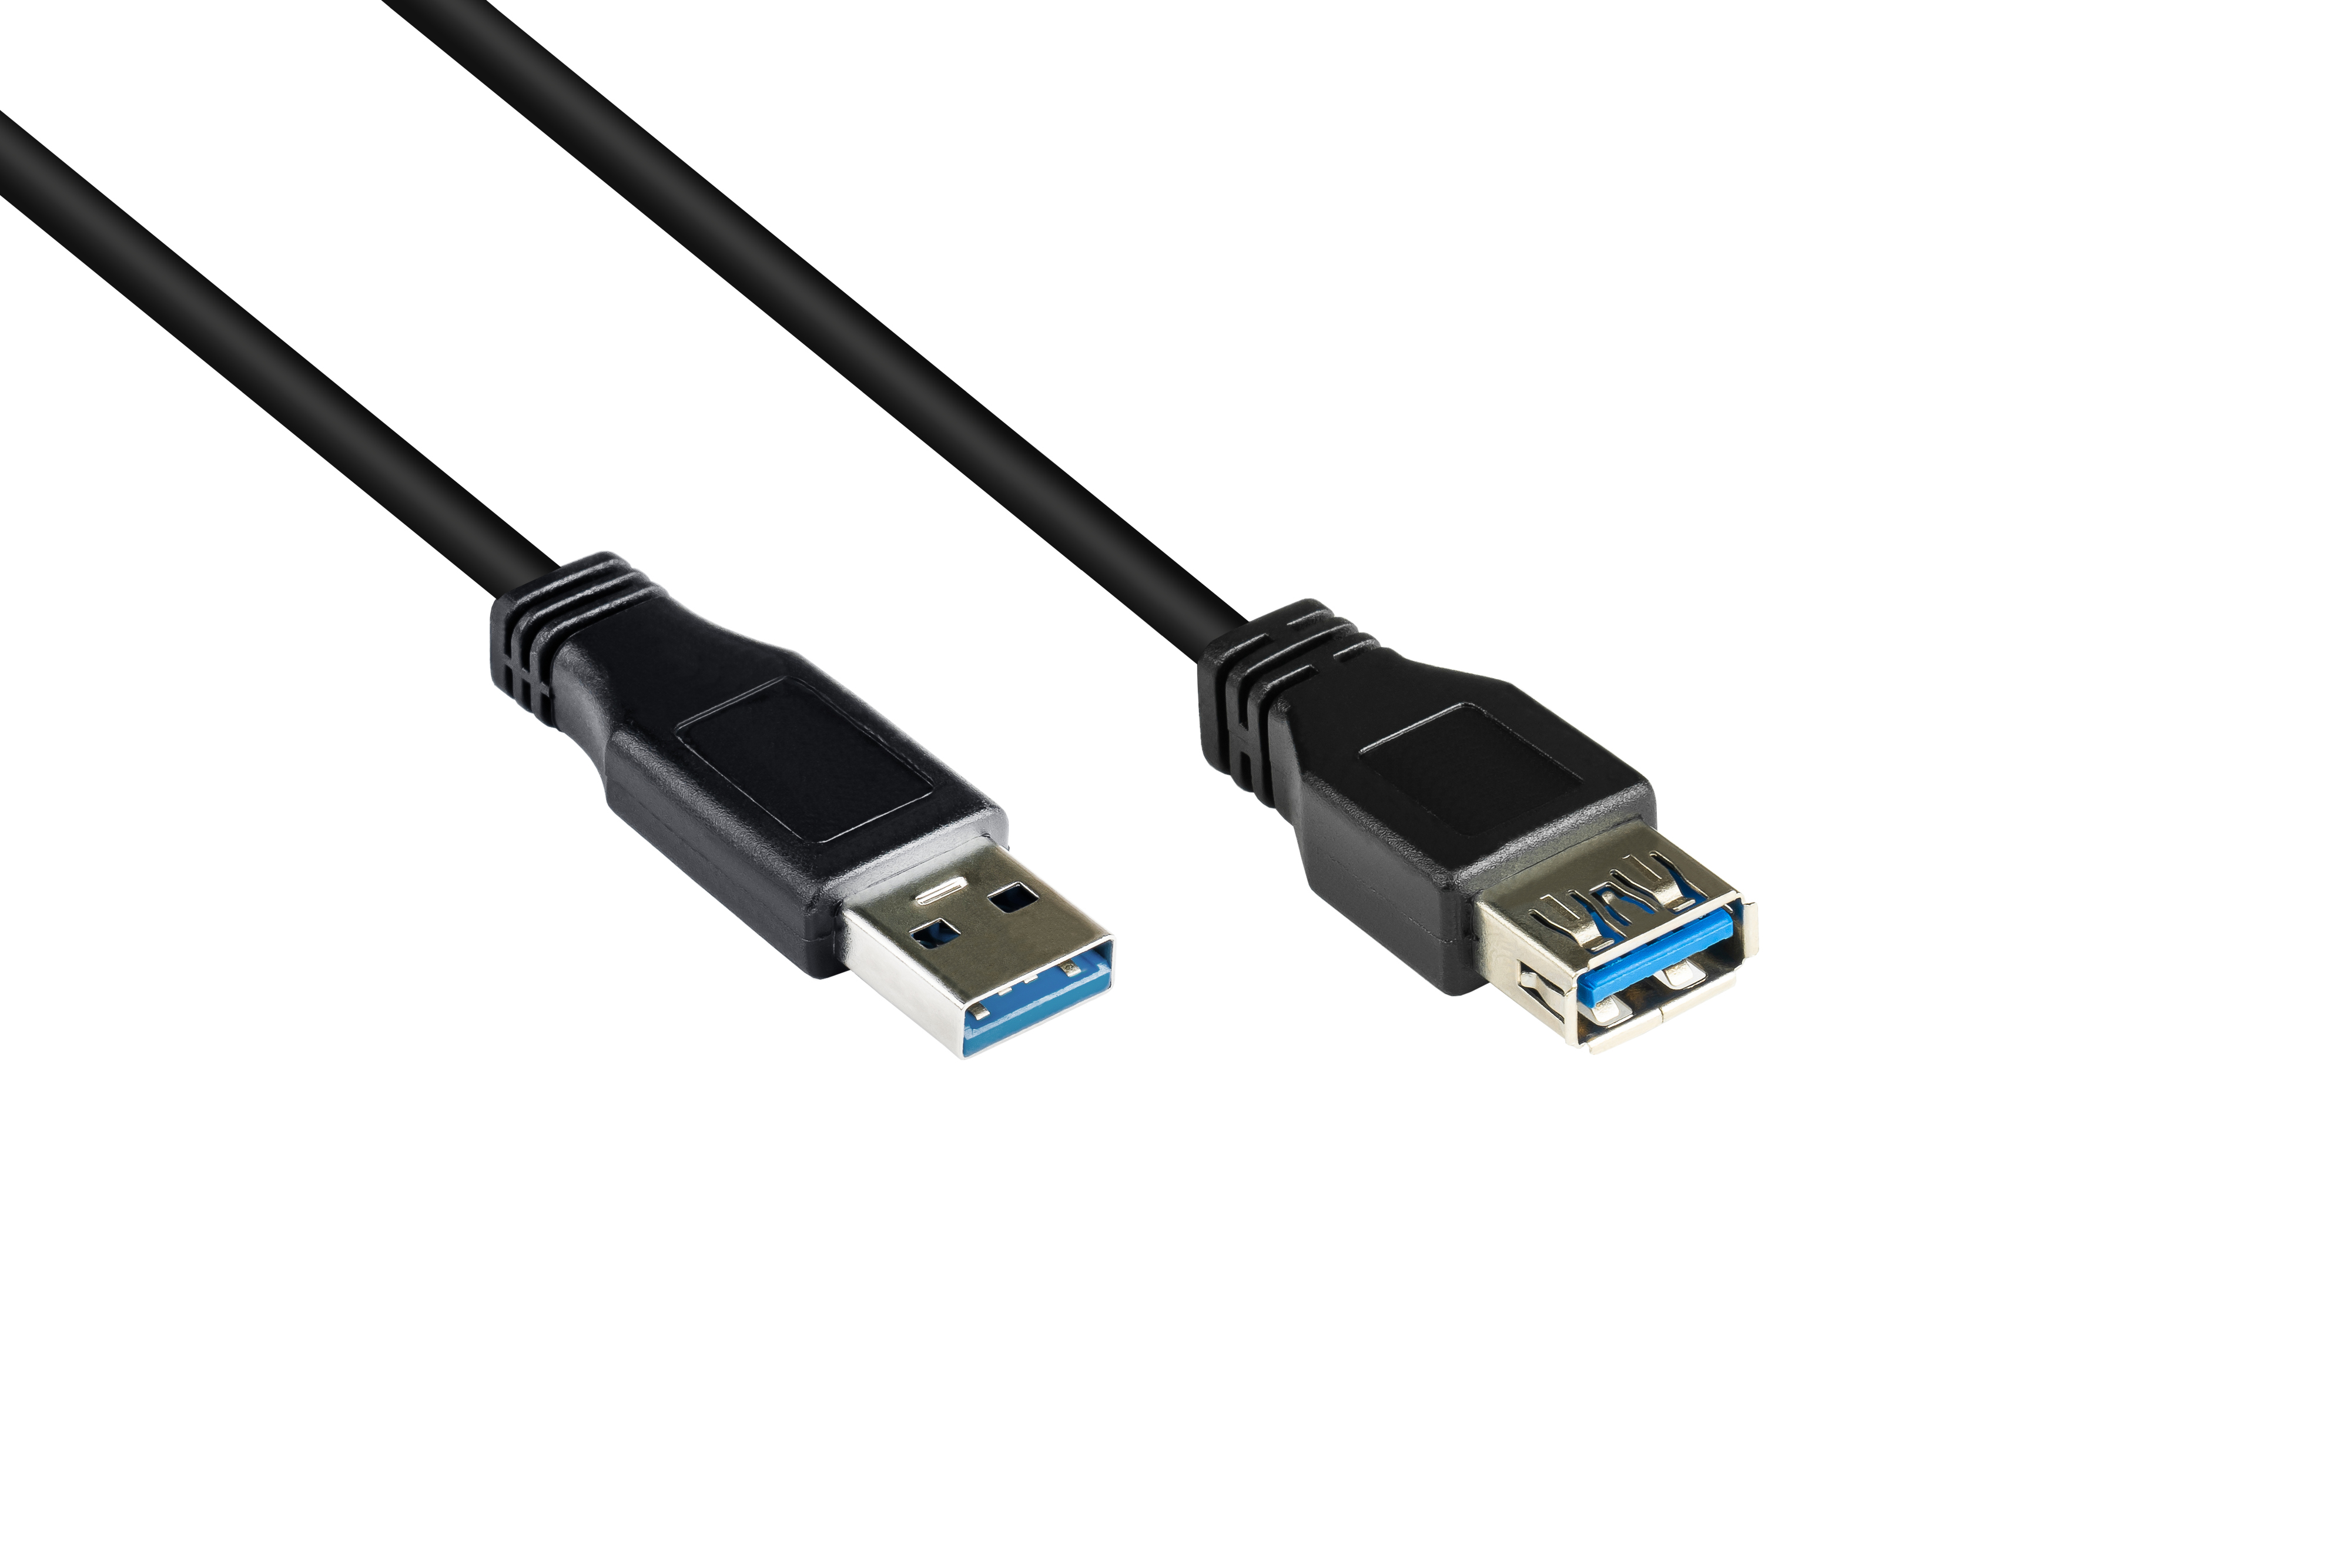 Stecker 3.0 CONNECTIONS USB GOOD schwarz Buchse Verlängerungskabel an A, A